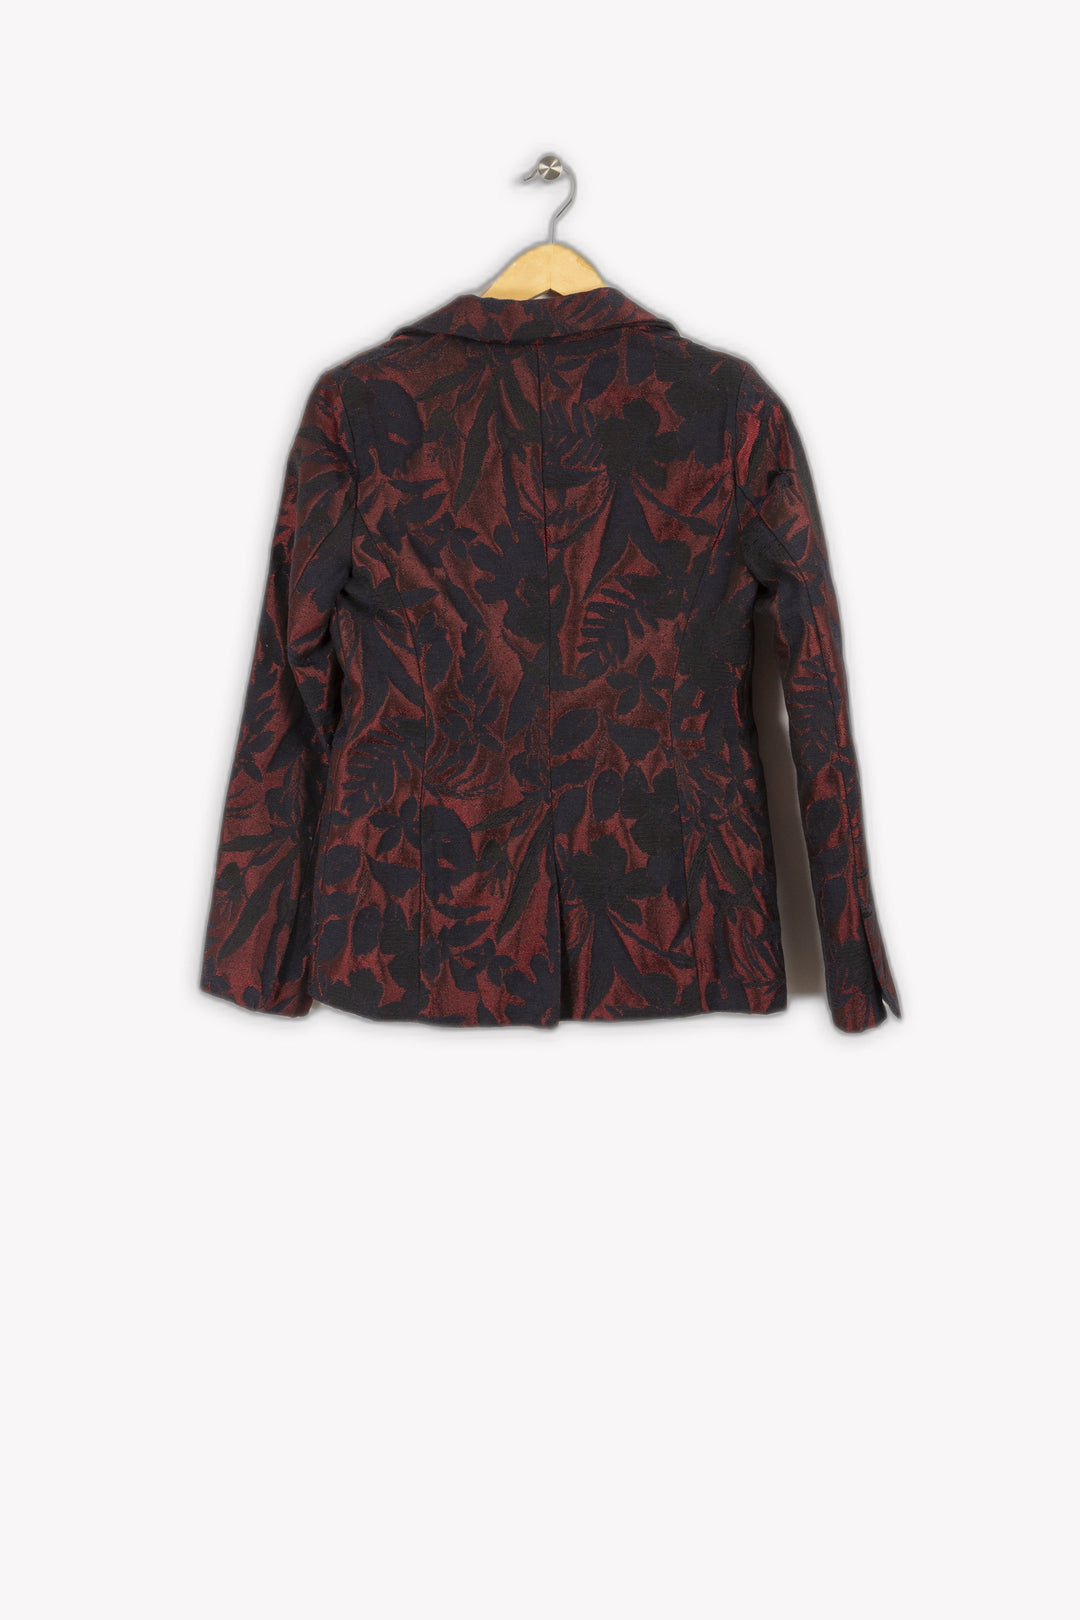 Burgundy and black patterned jacket - M / 38